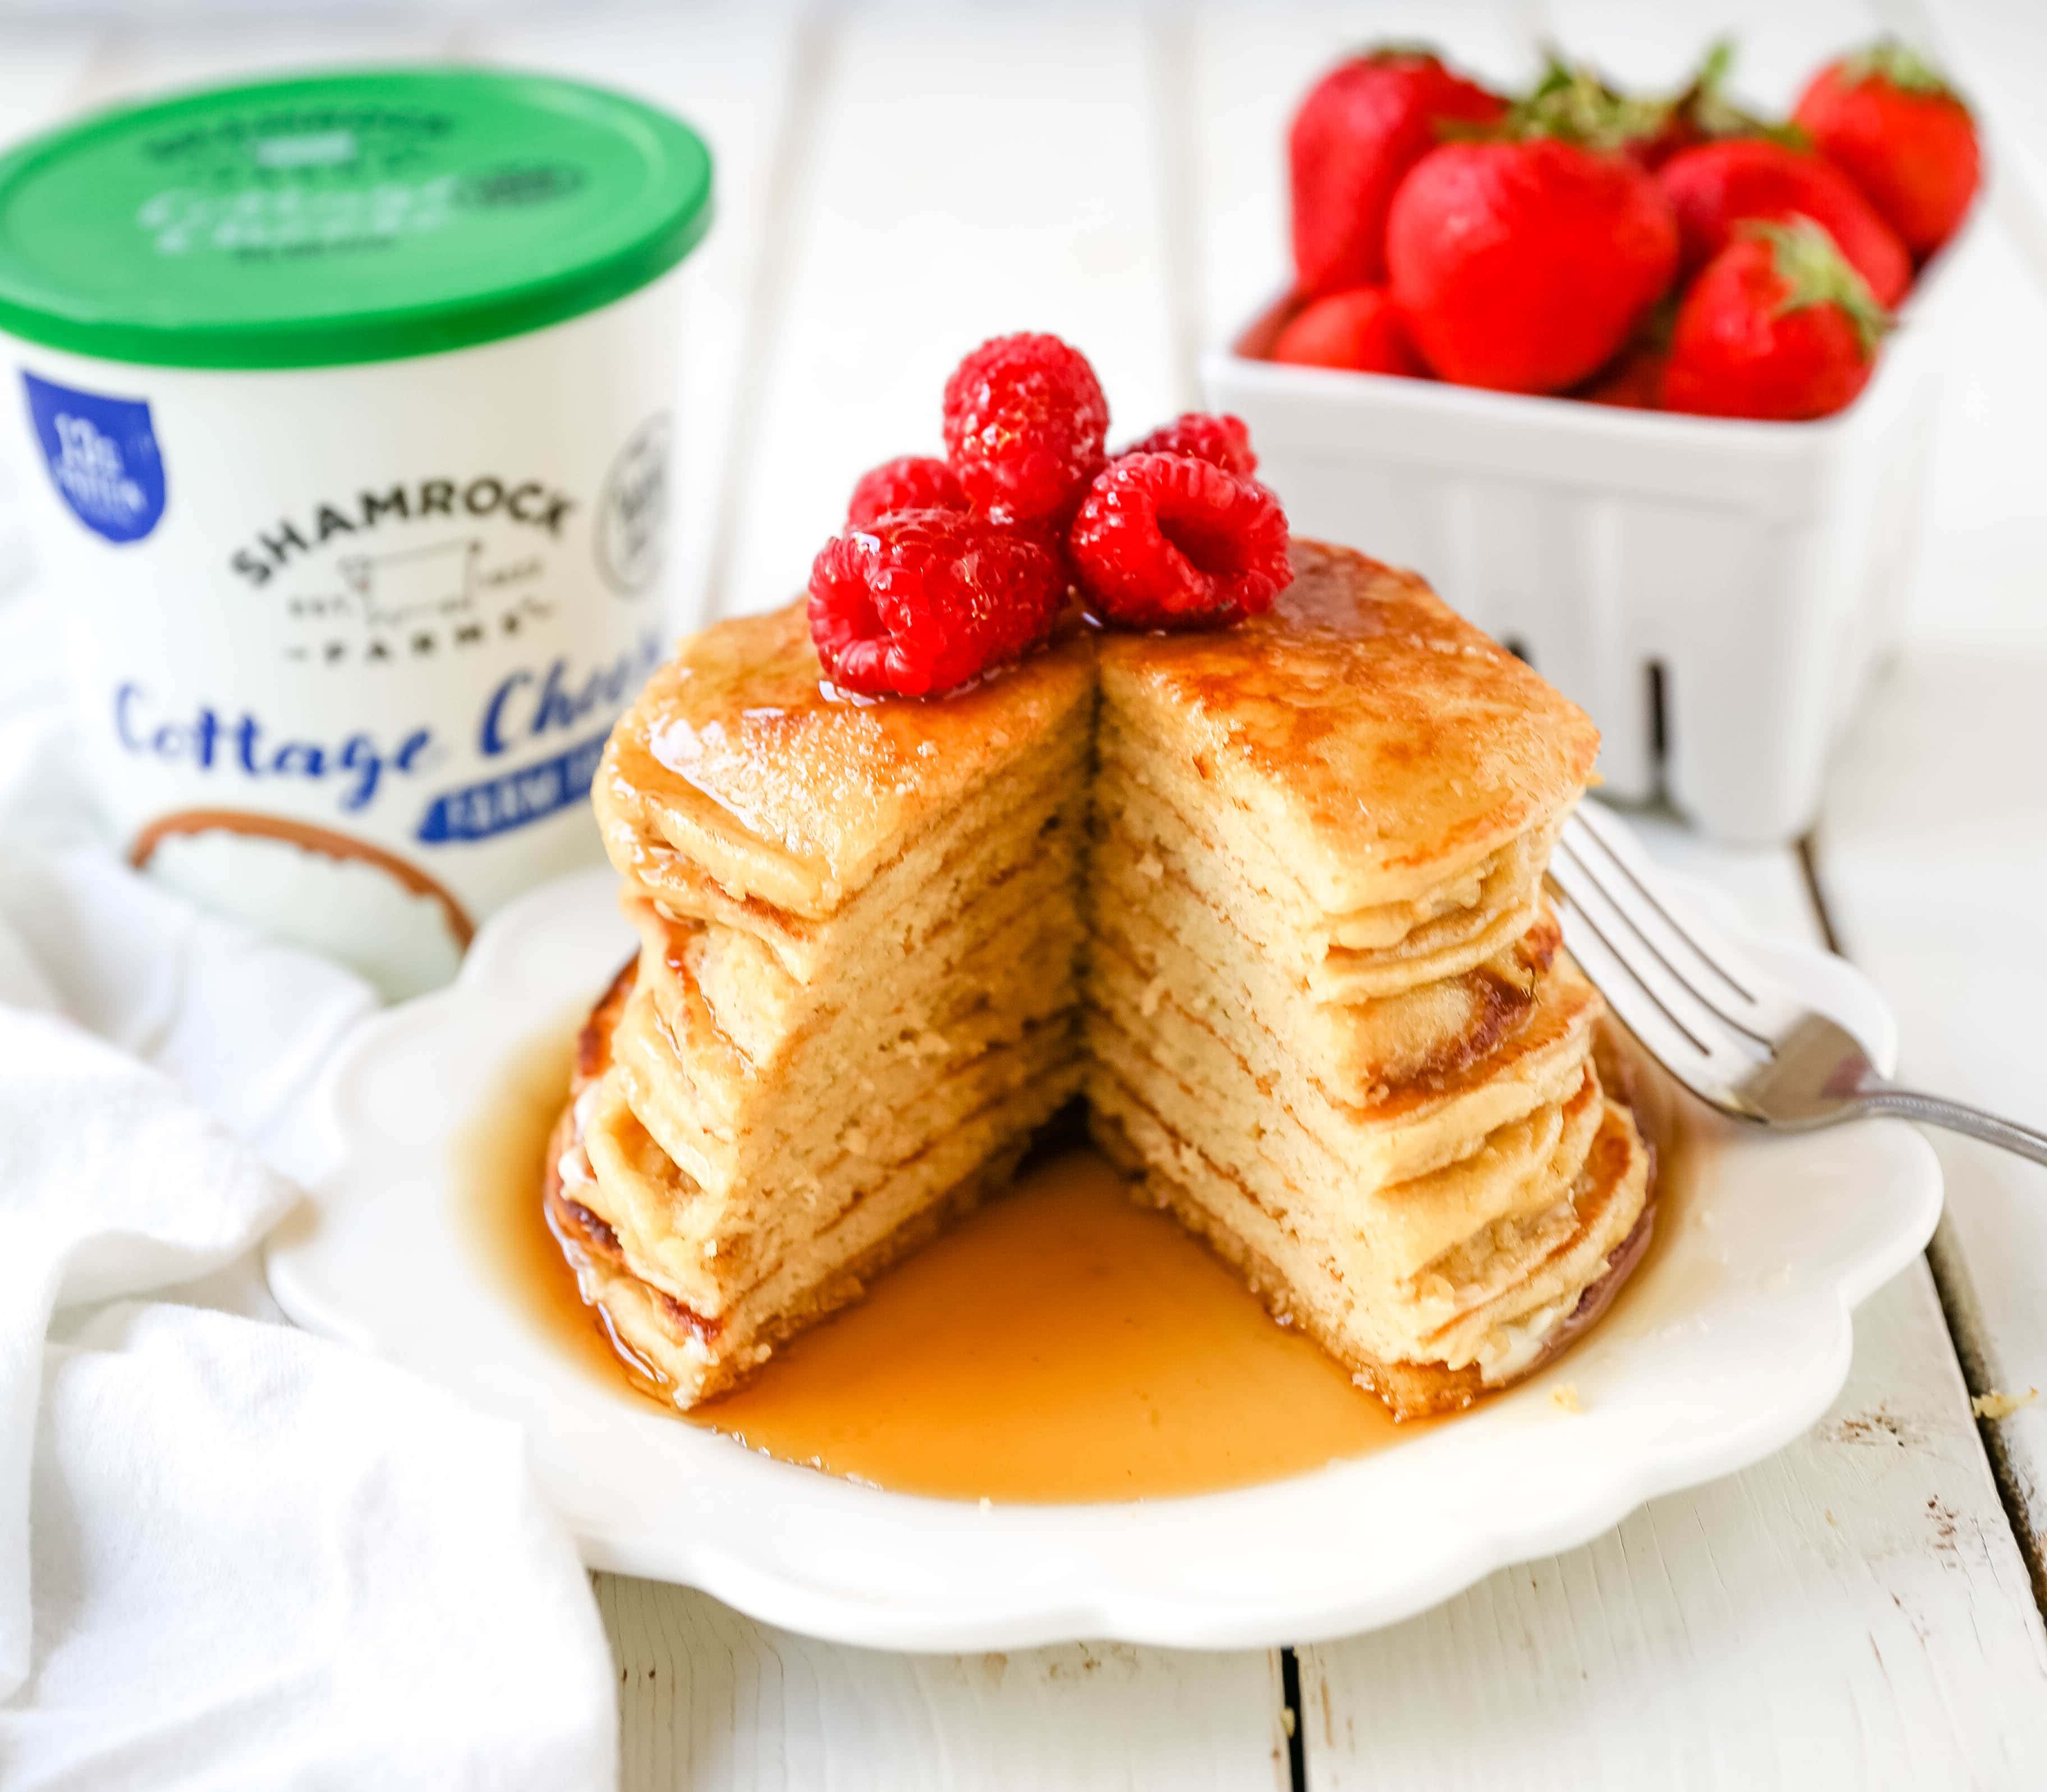 Cottage Cheese Pancakes High-protein gluten-free cottage cheese pancakes made a healthy, filling, delicious breakfast! www.modernhoney.com #breakfast #highprotein #protein #proteinrecipes #cottagecheesepancakes 